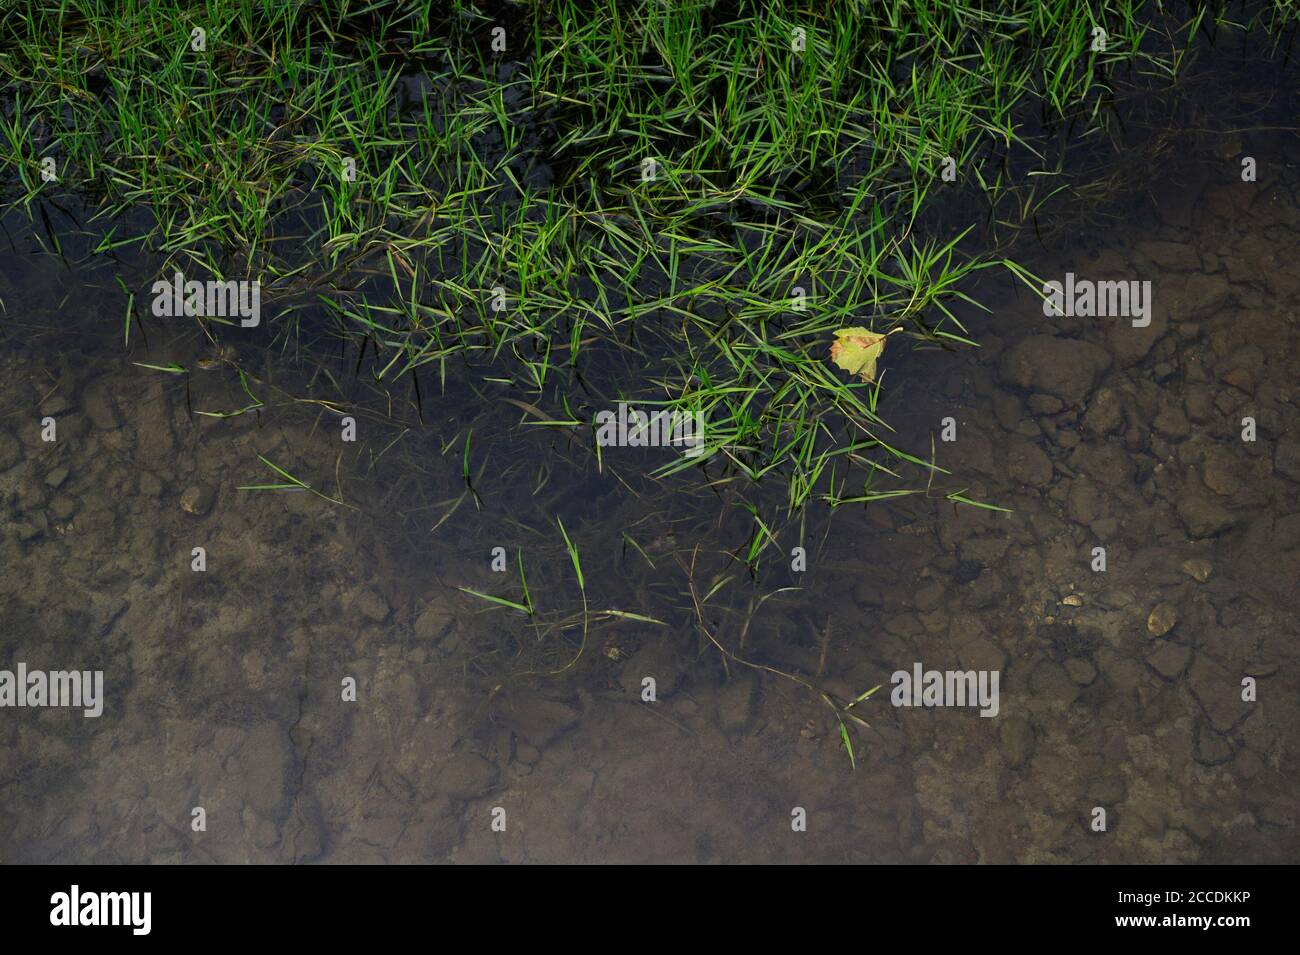 Gras im Wasser. Boden mit Steinen ist unter der Wasseroberfläche sichtbar. Minimalistisches Detail der Natur Stockfoto